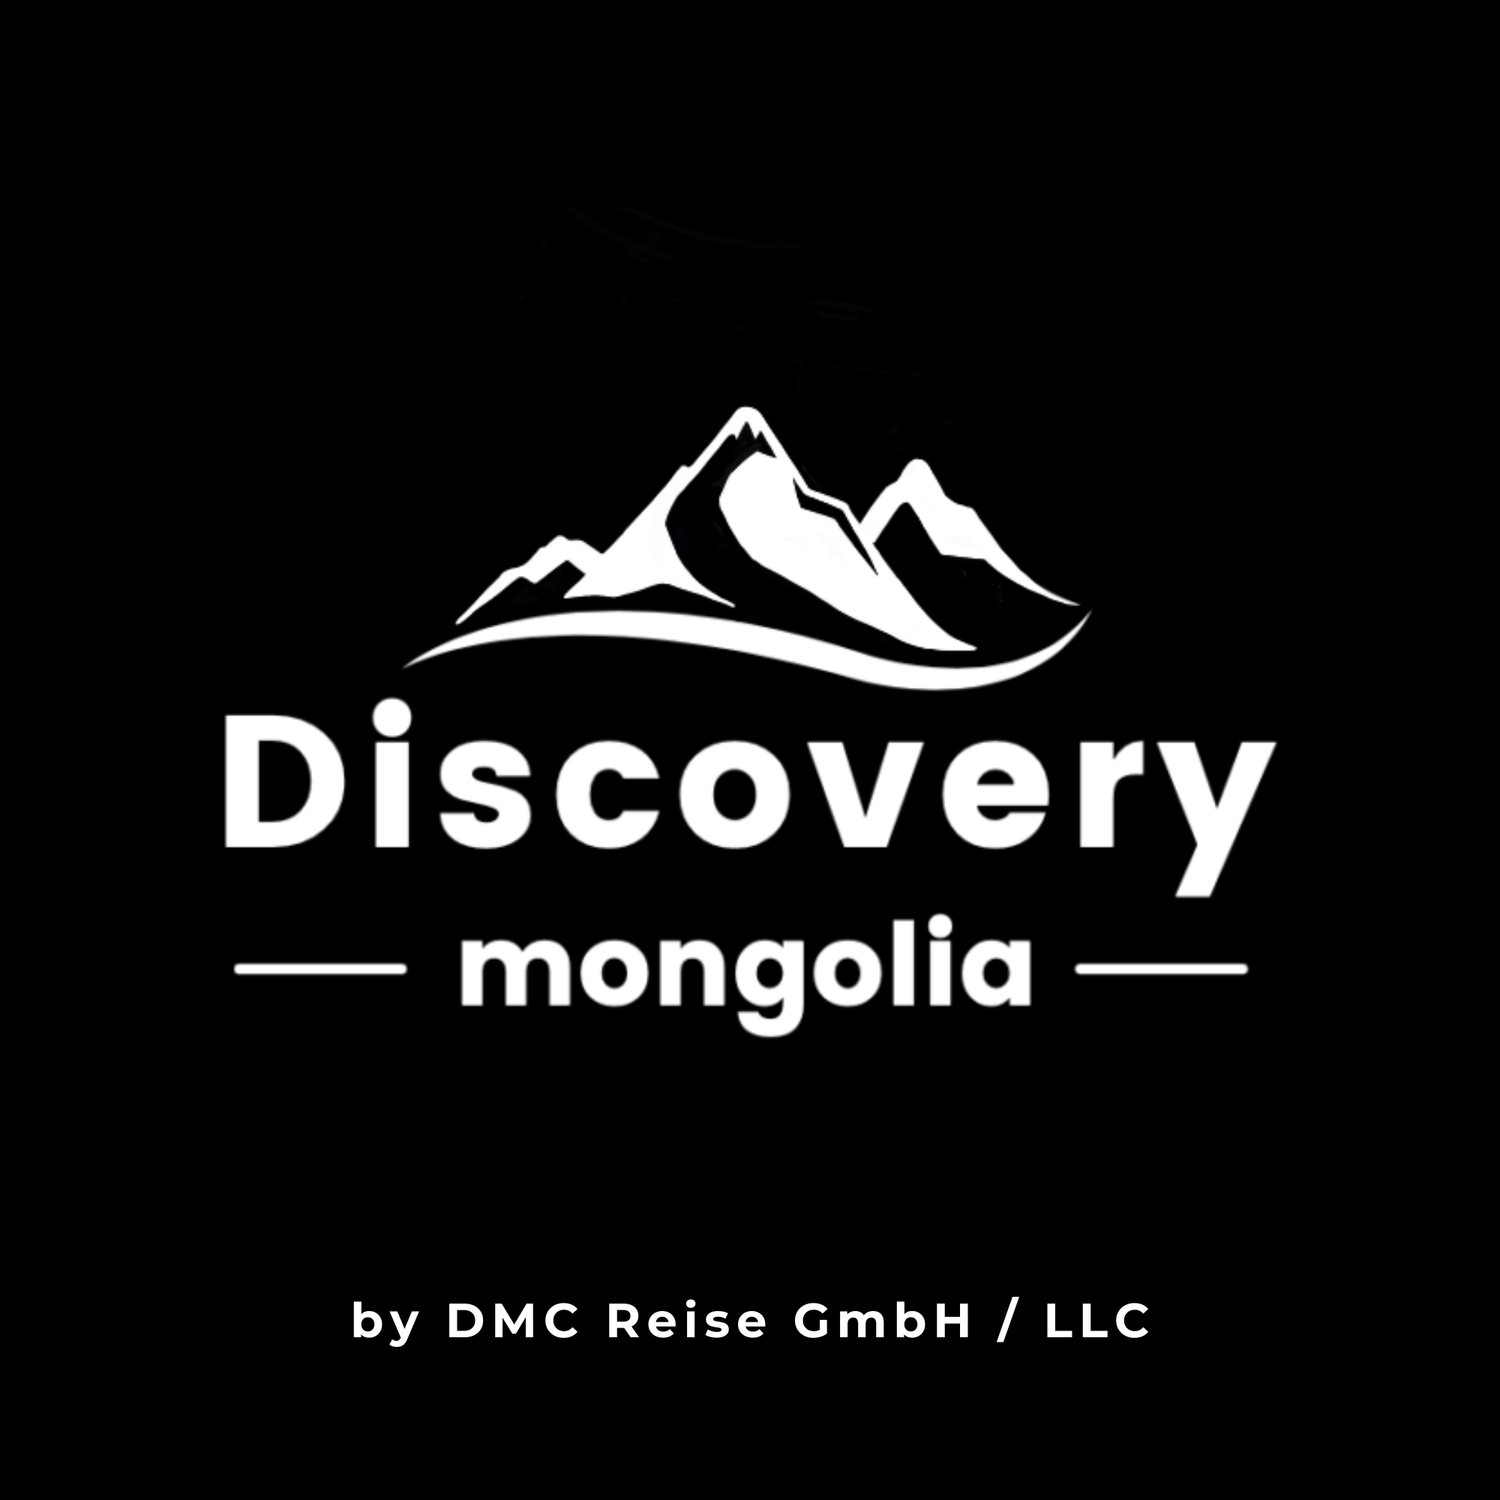 Discovery Mongolia